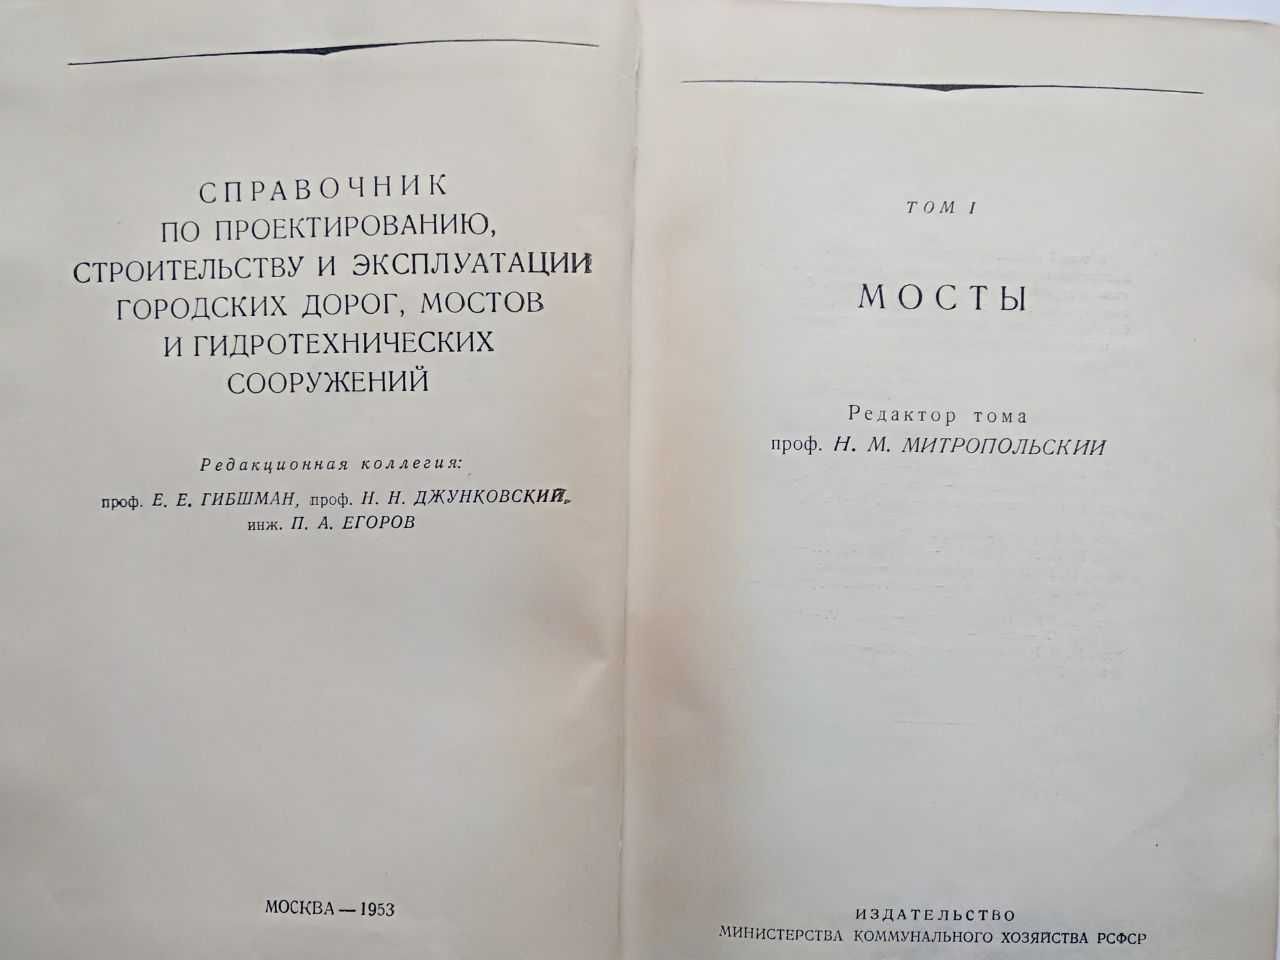 Мосты Митропольский Н. Справочник по проектированию строительству 1953